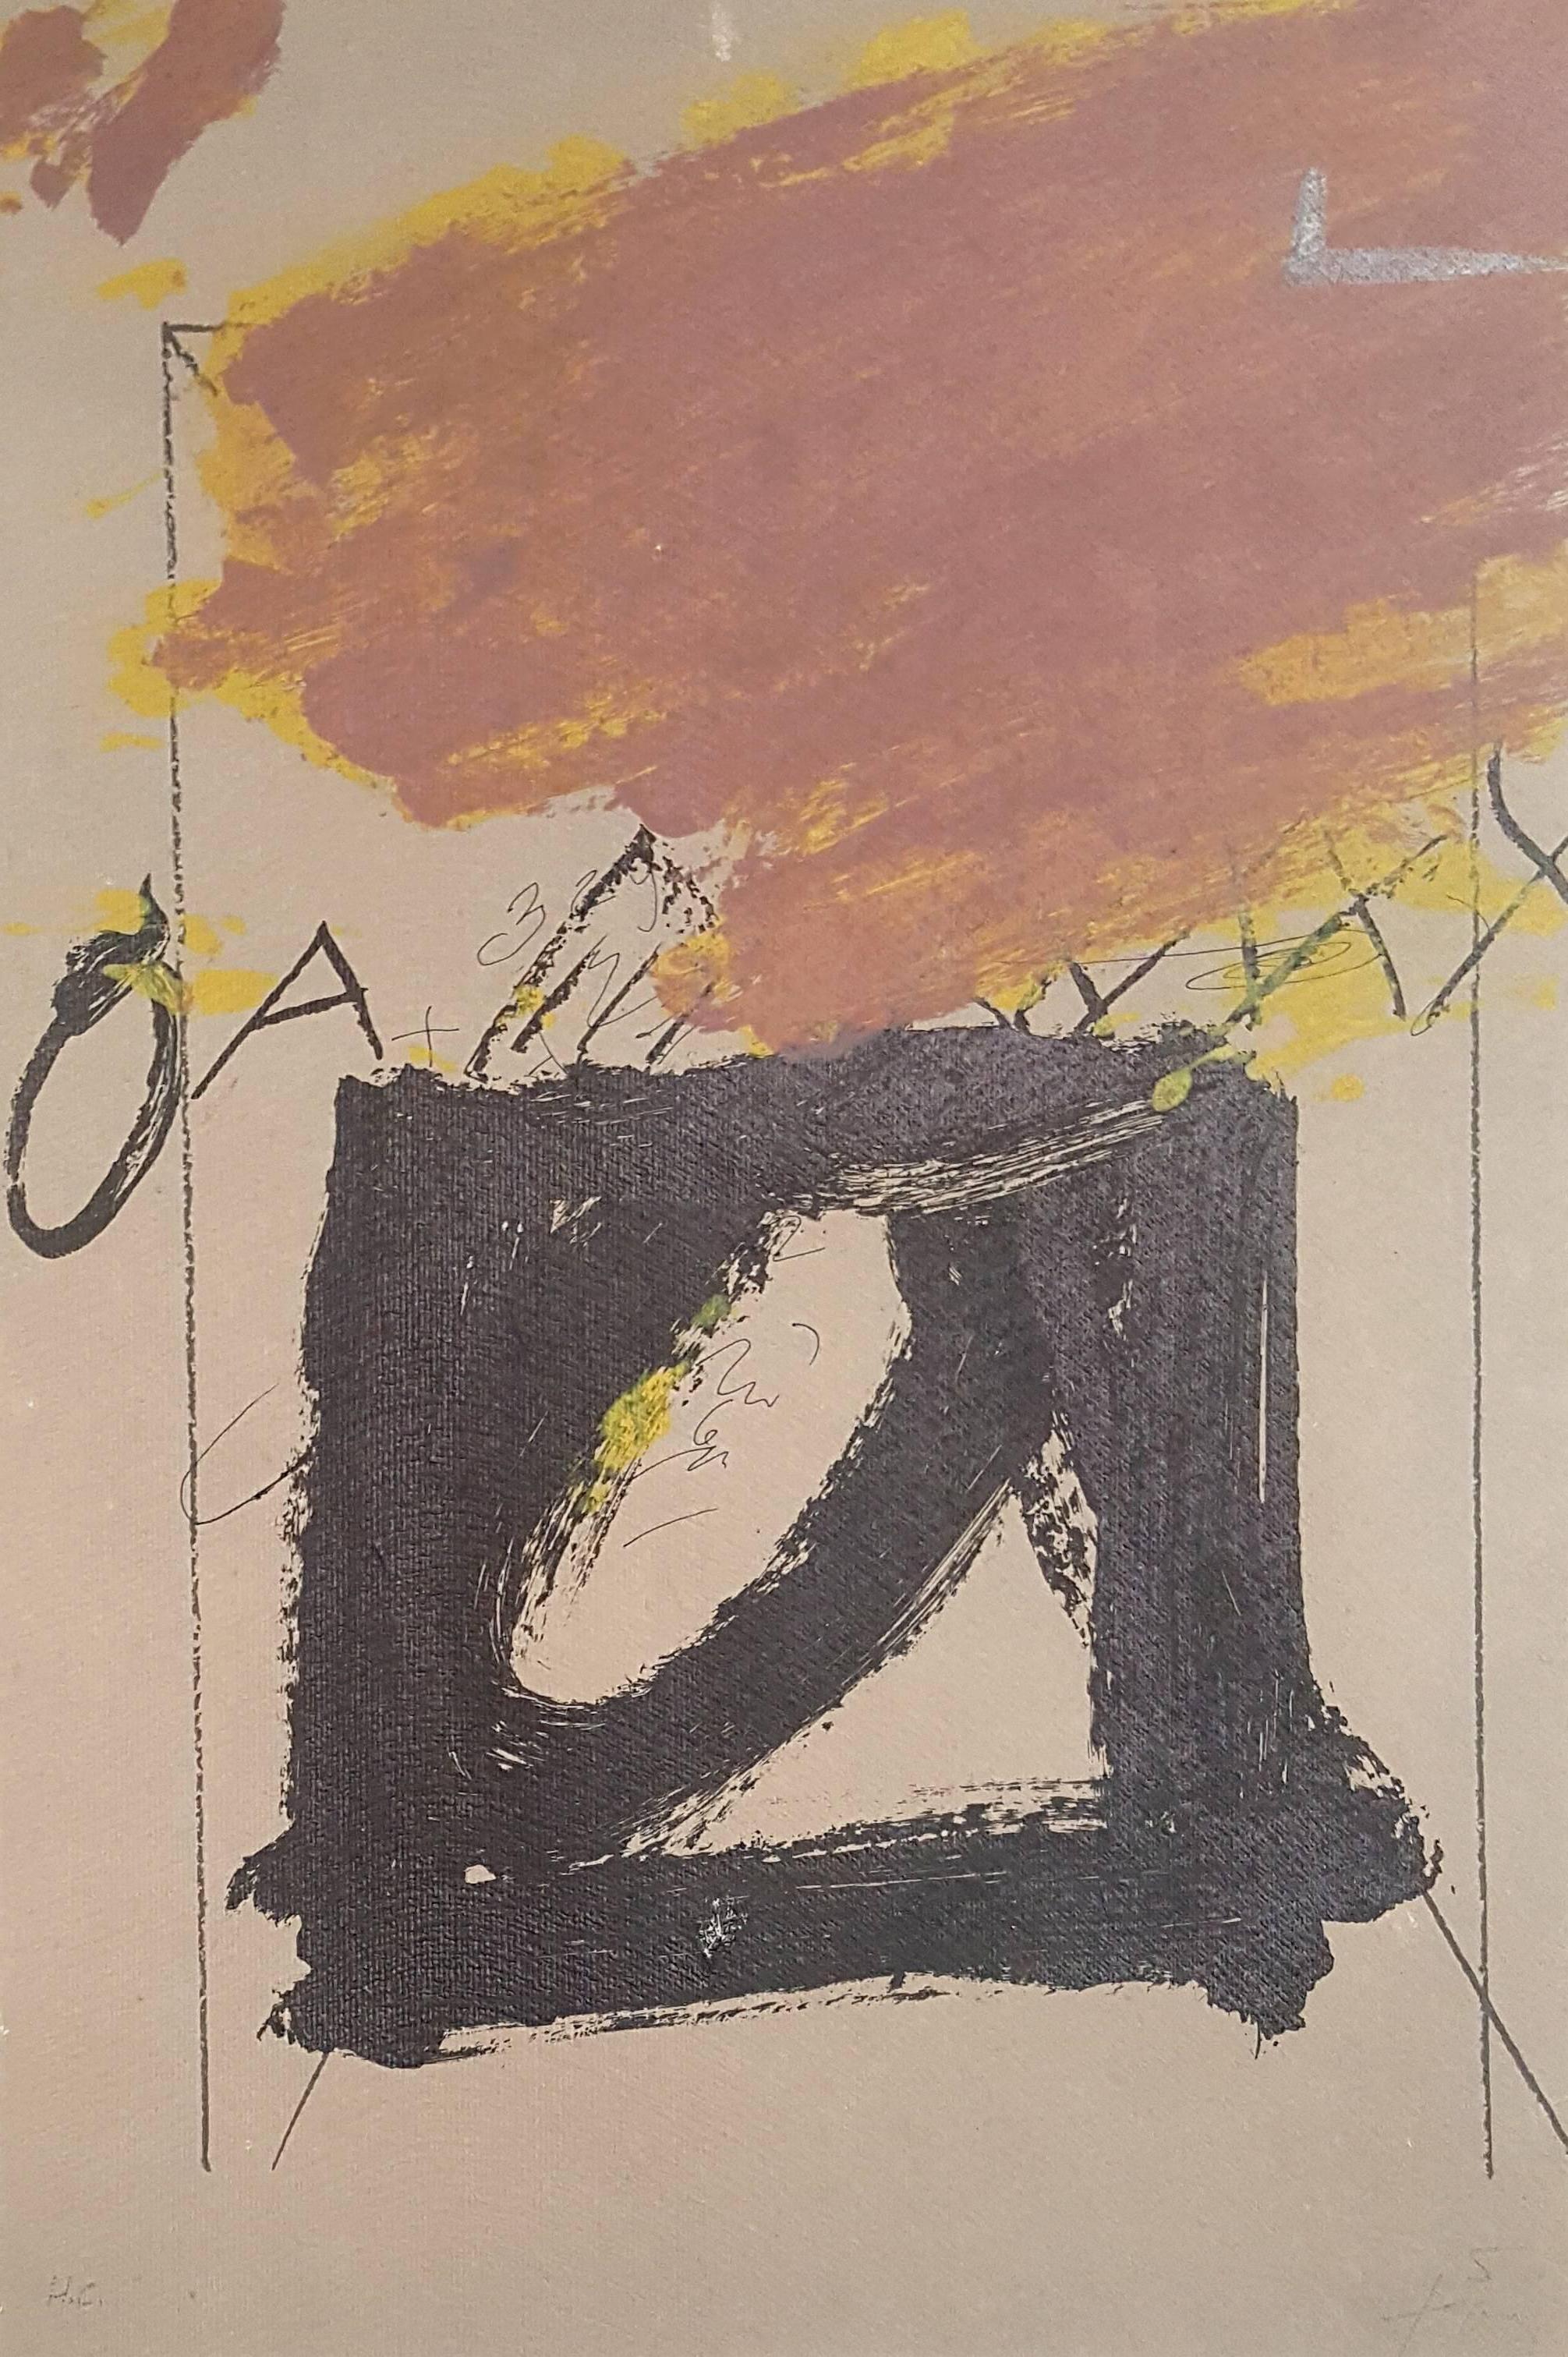 Antoni Tàpies Abstract Print - Black Square - Original Lithograph Handsigned - 100 copies